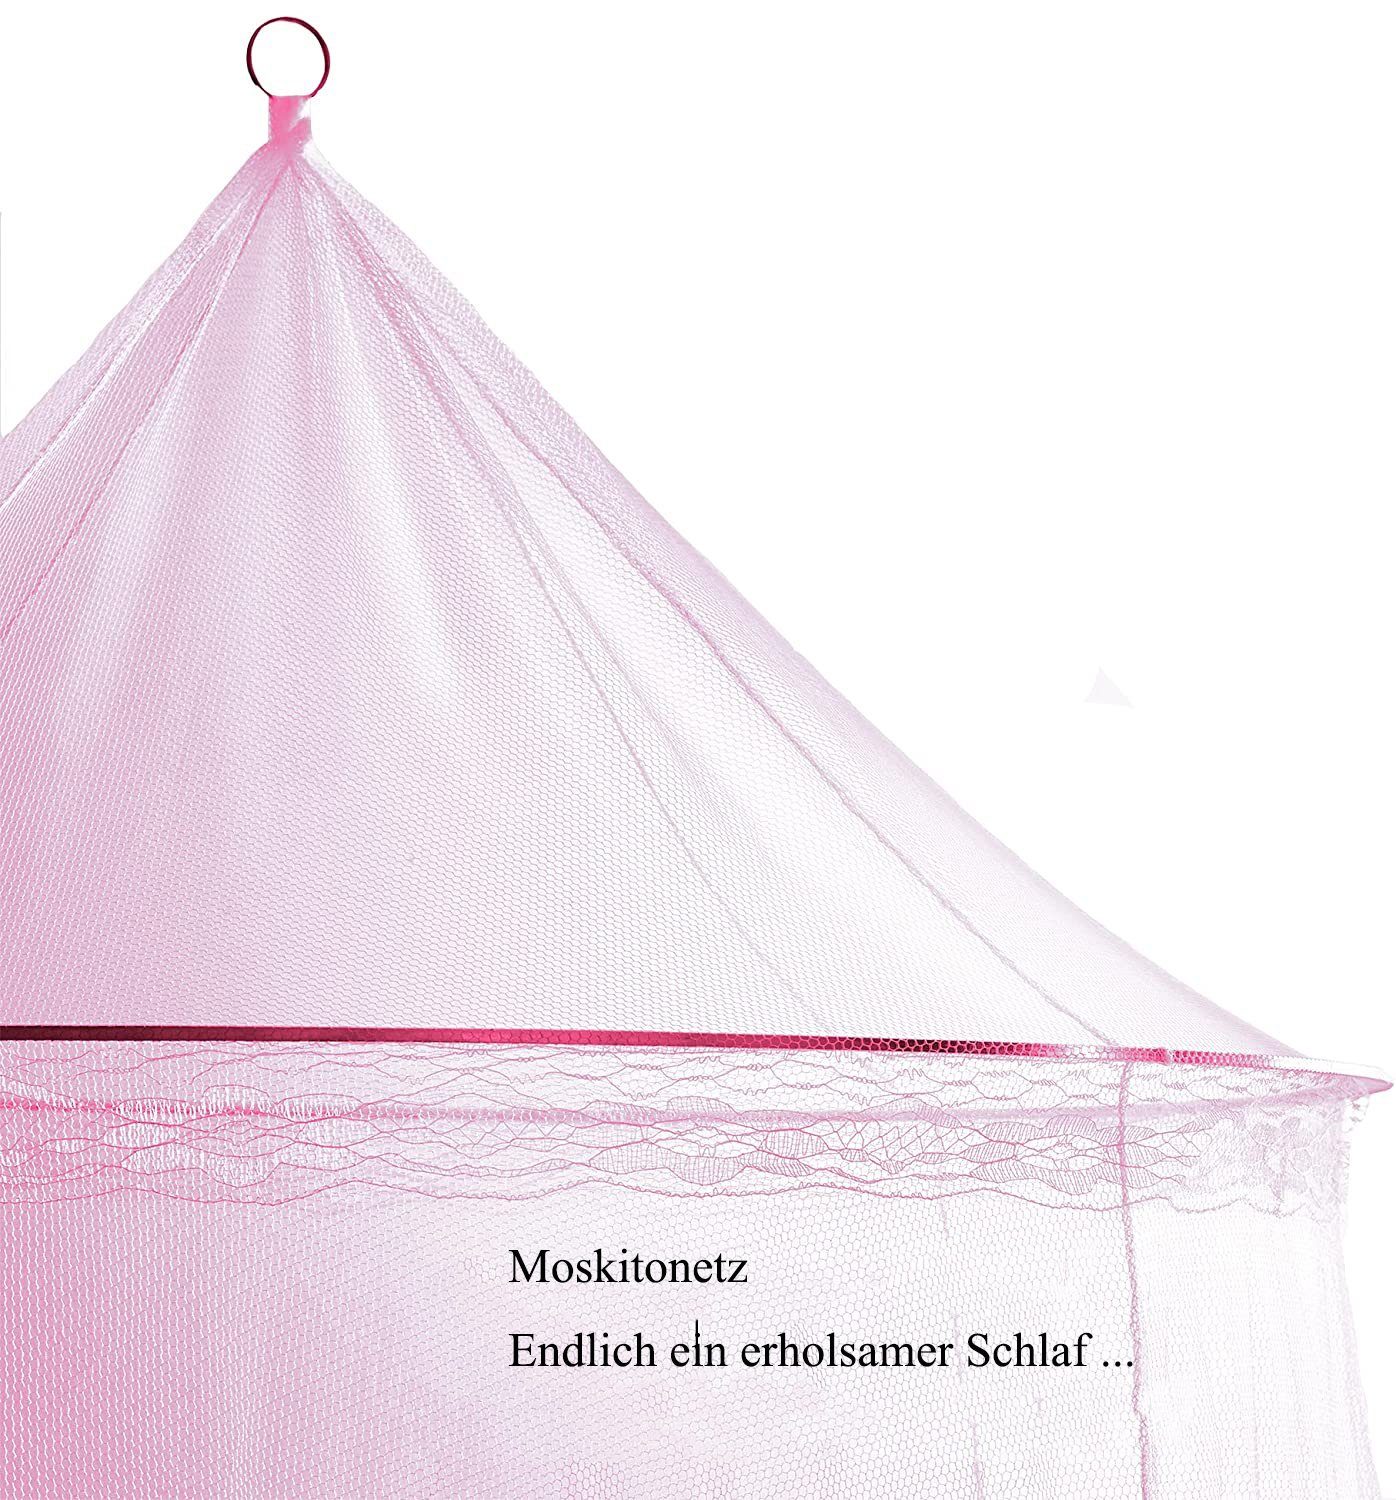 GelldG Moskitonetz Netz, und Moskito rosa Bett Moskitonetz für Mückennetz, Fliegennetz Reise